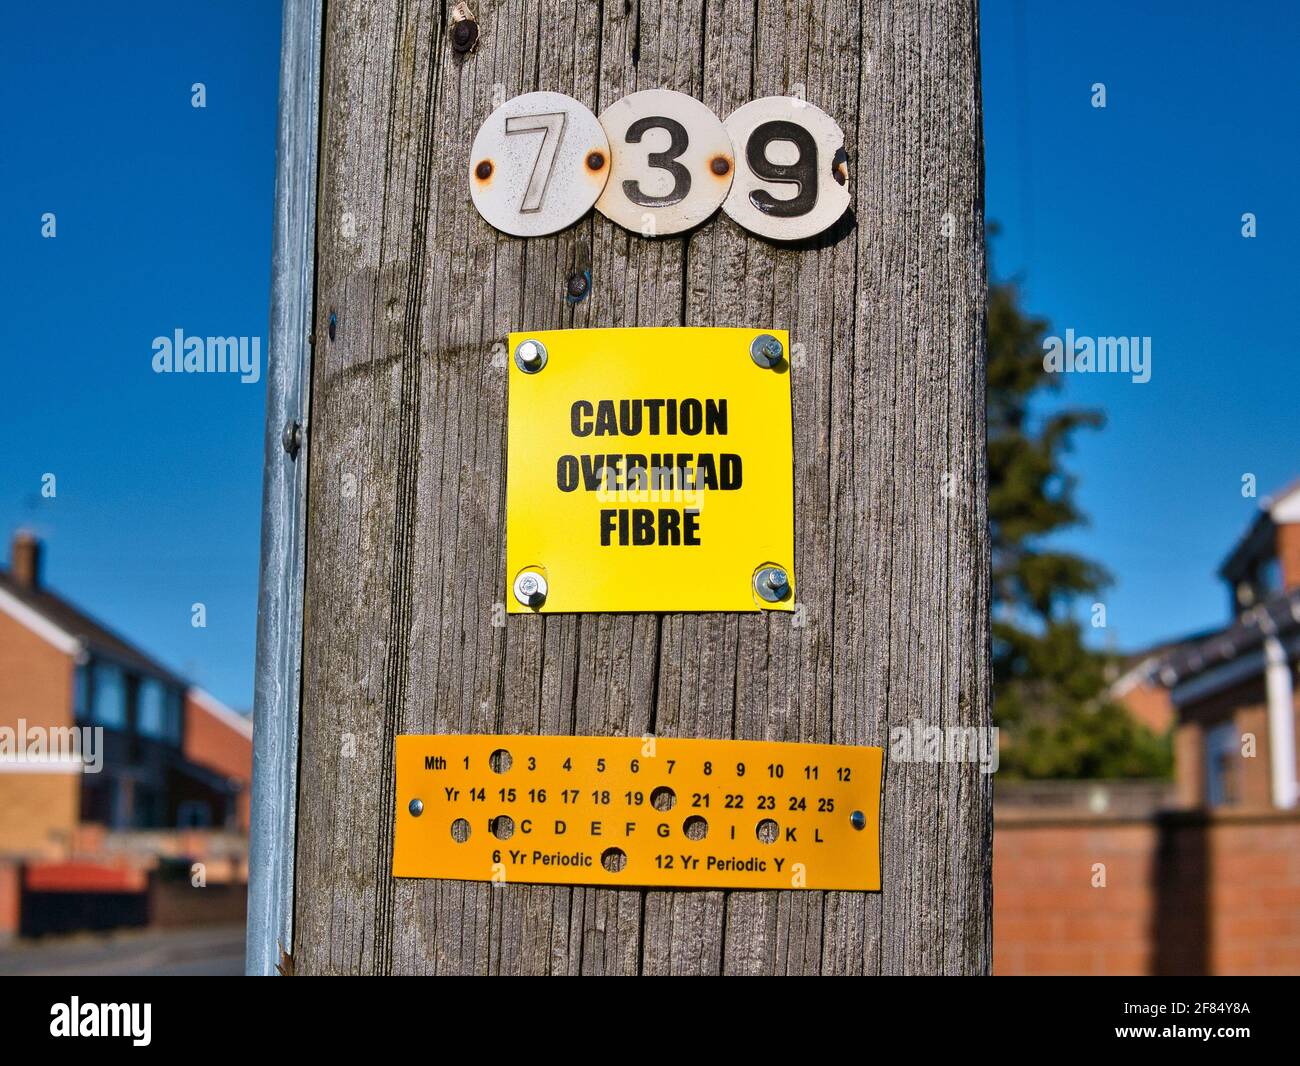 Un panneau jaune fixé à un poteau de télégraphe en bois avertit que les lignes de fibre optique sont en hauteur. Pris par une journée ensoleillée dans une zone urbaine du nord-ouest de l'Angleterre. Banque D'Images